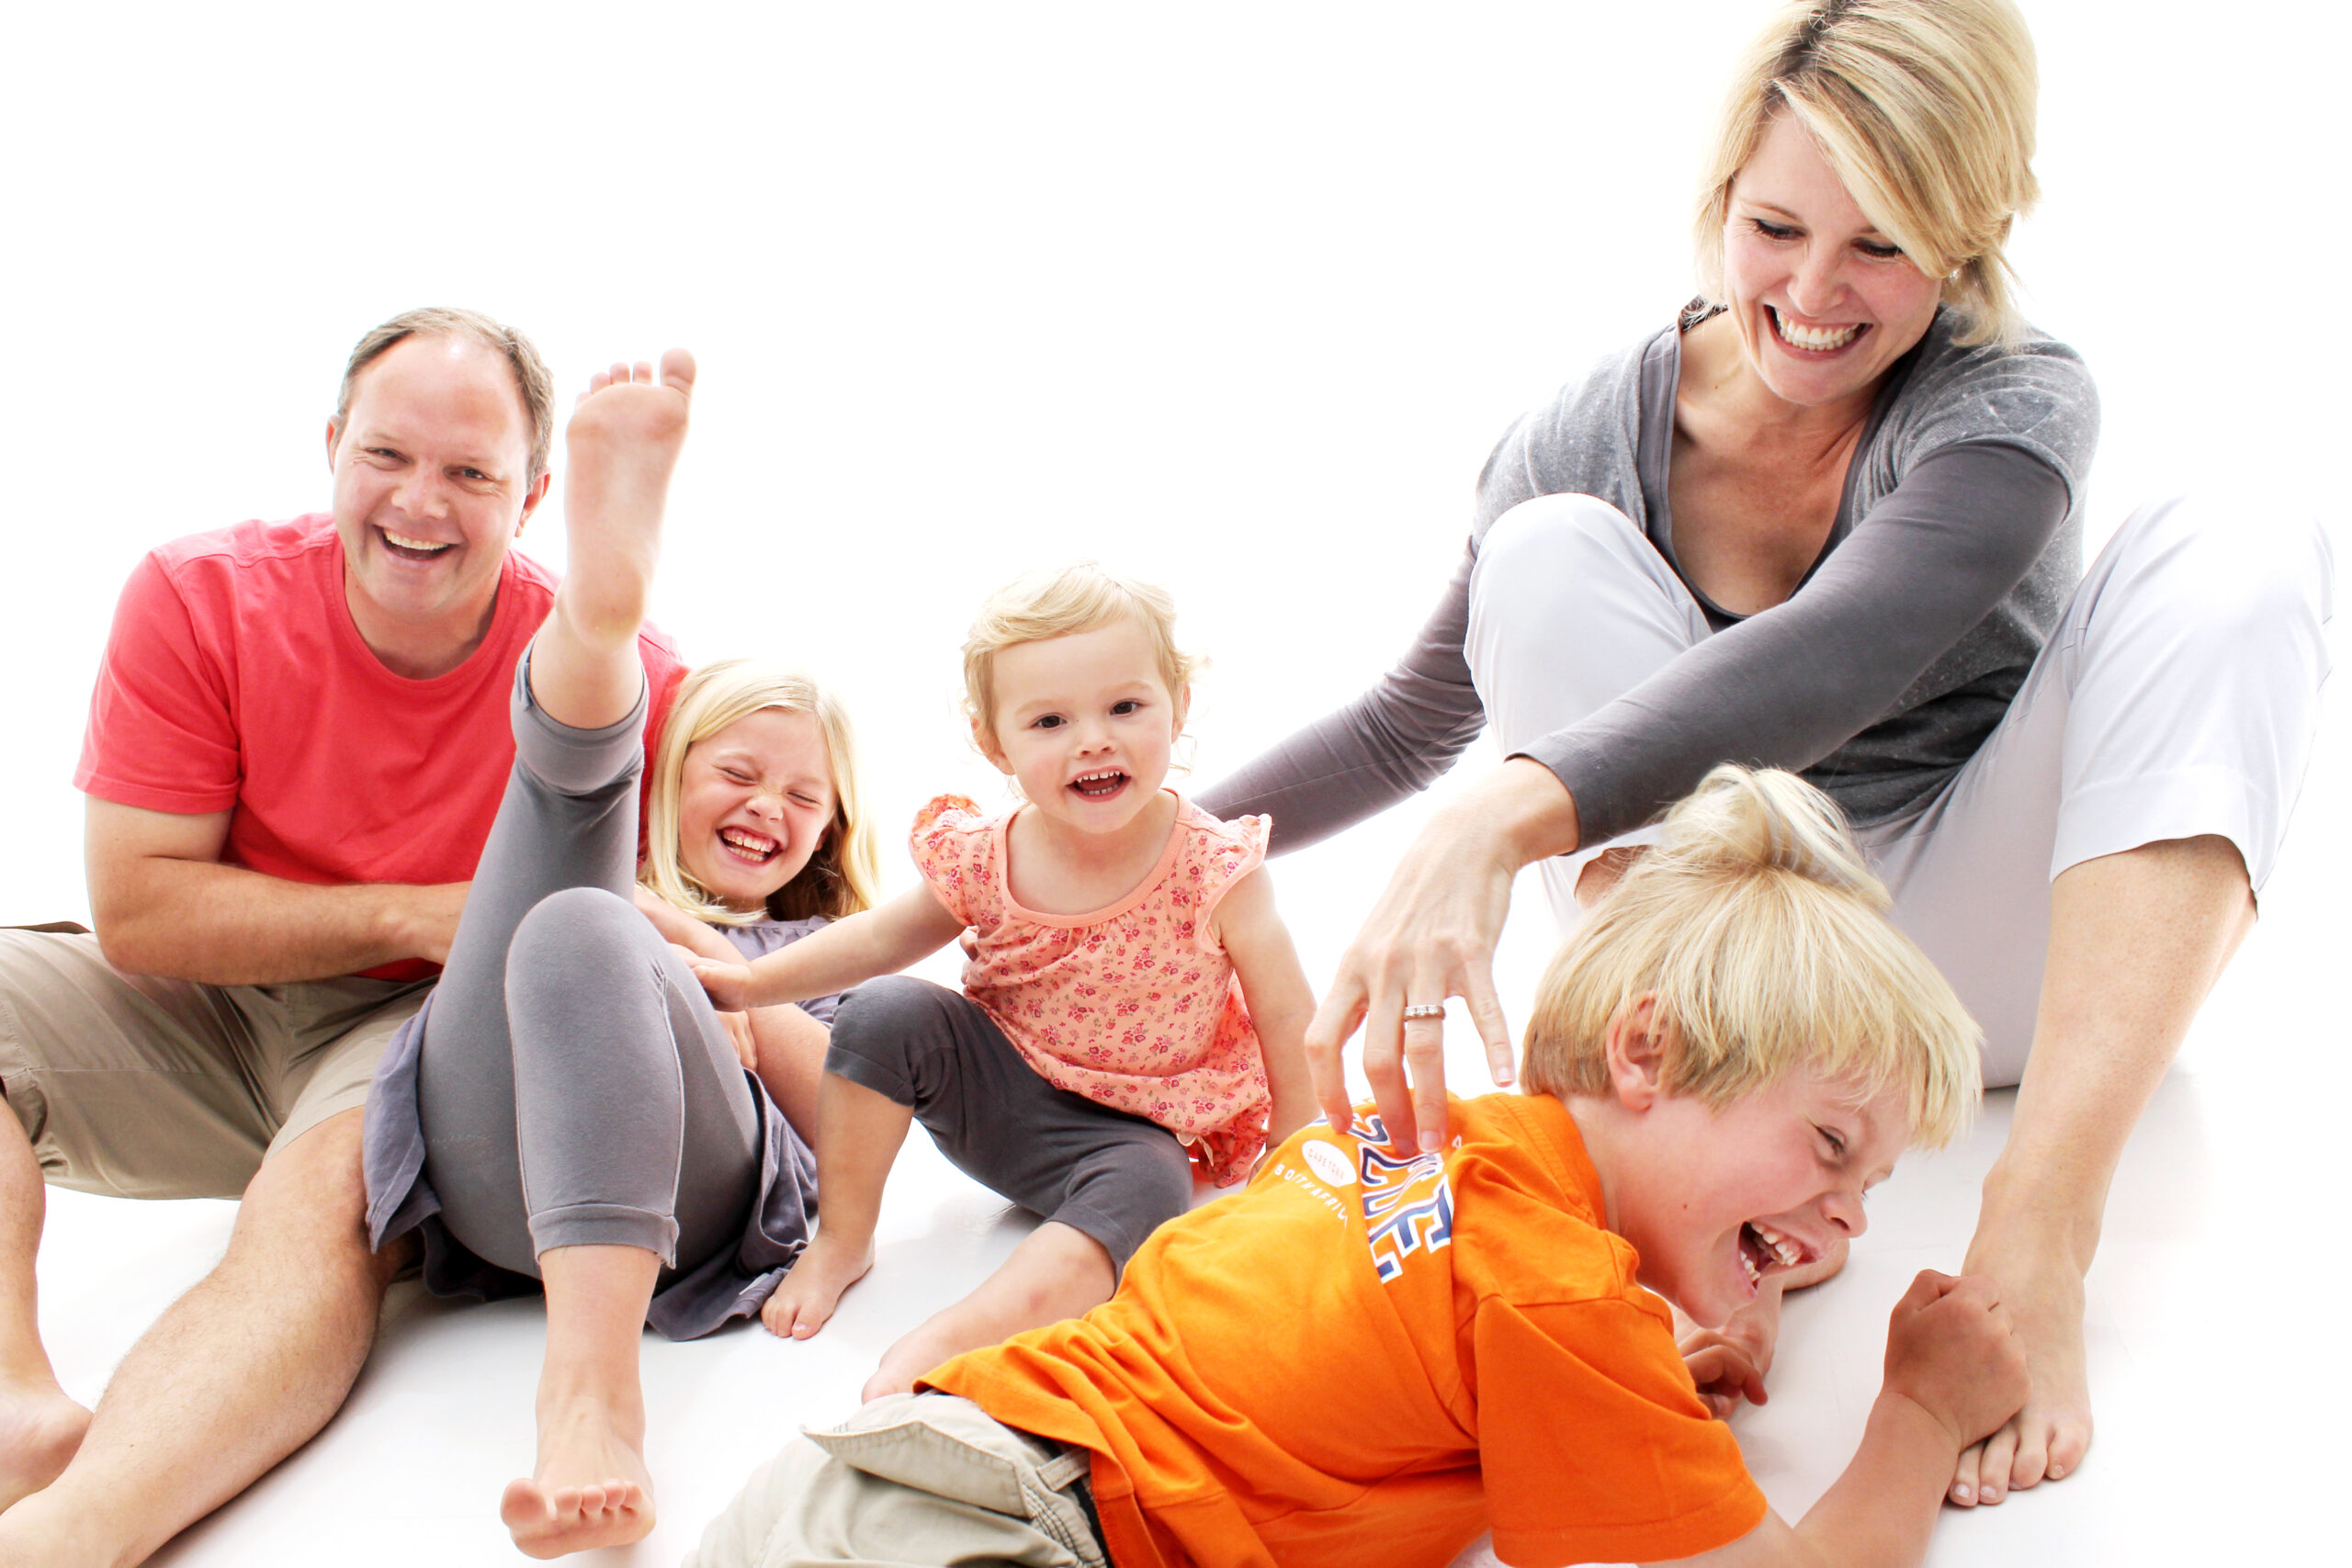 Eine glückliche Familie spielt und lacht zusammen auf einem weißen Hintergrund.